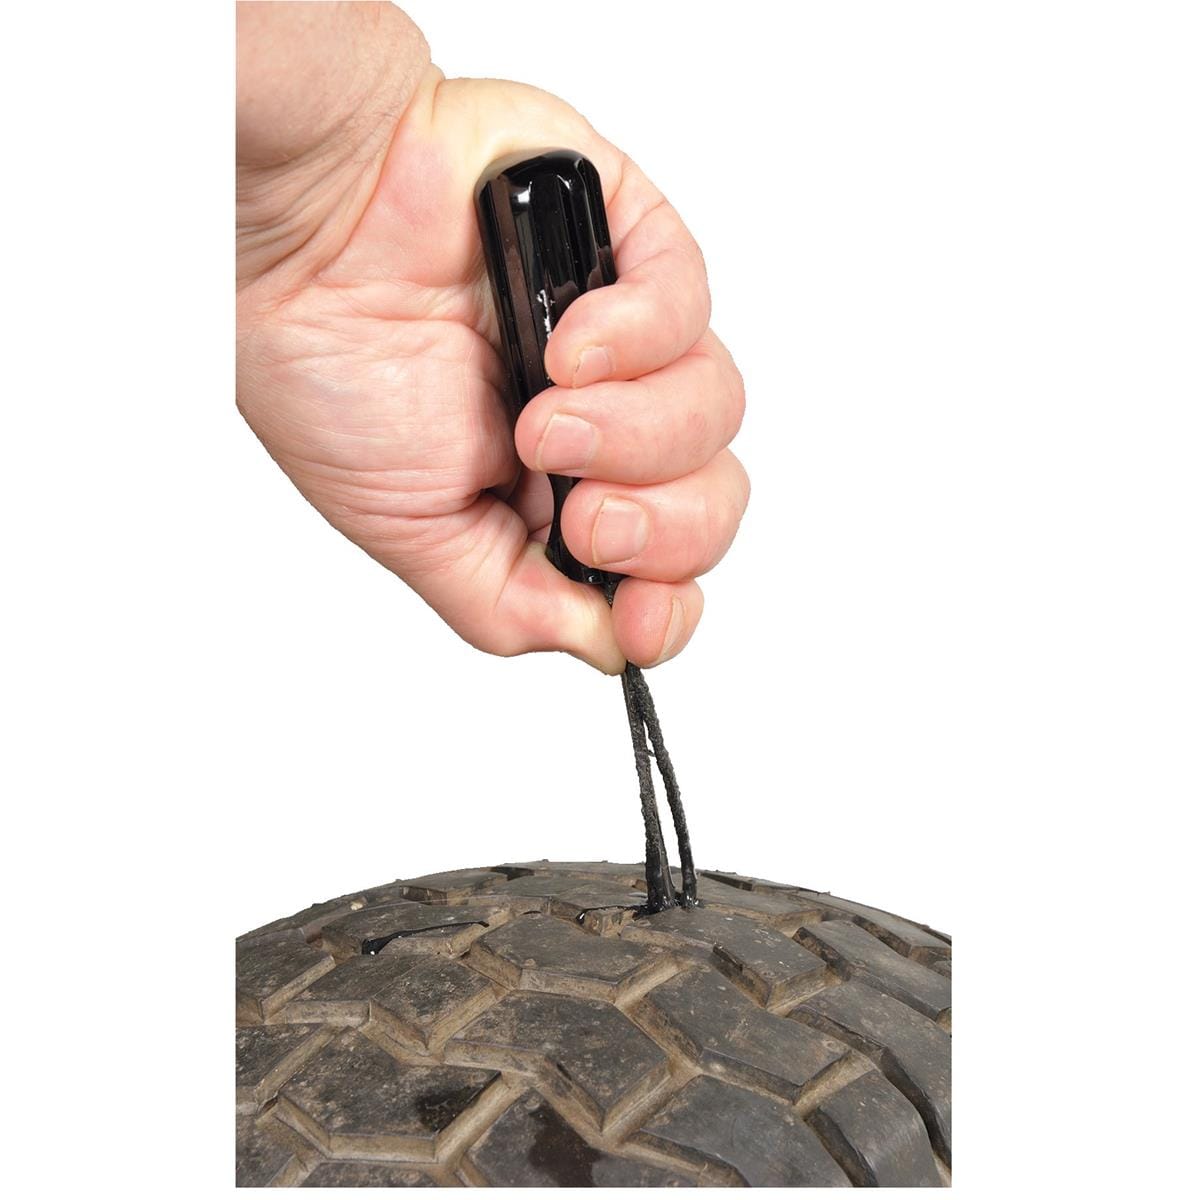 Versa-Tire Large Repair Kit